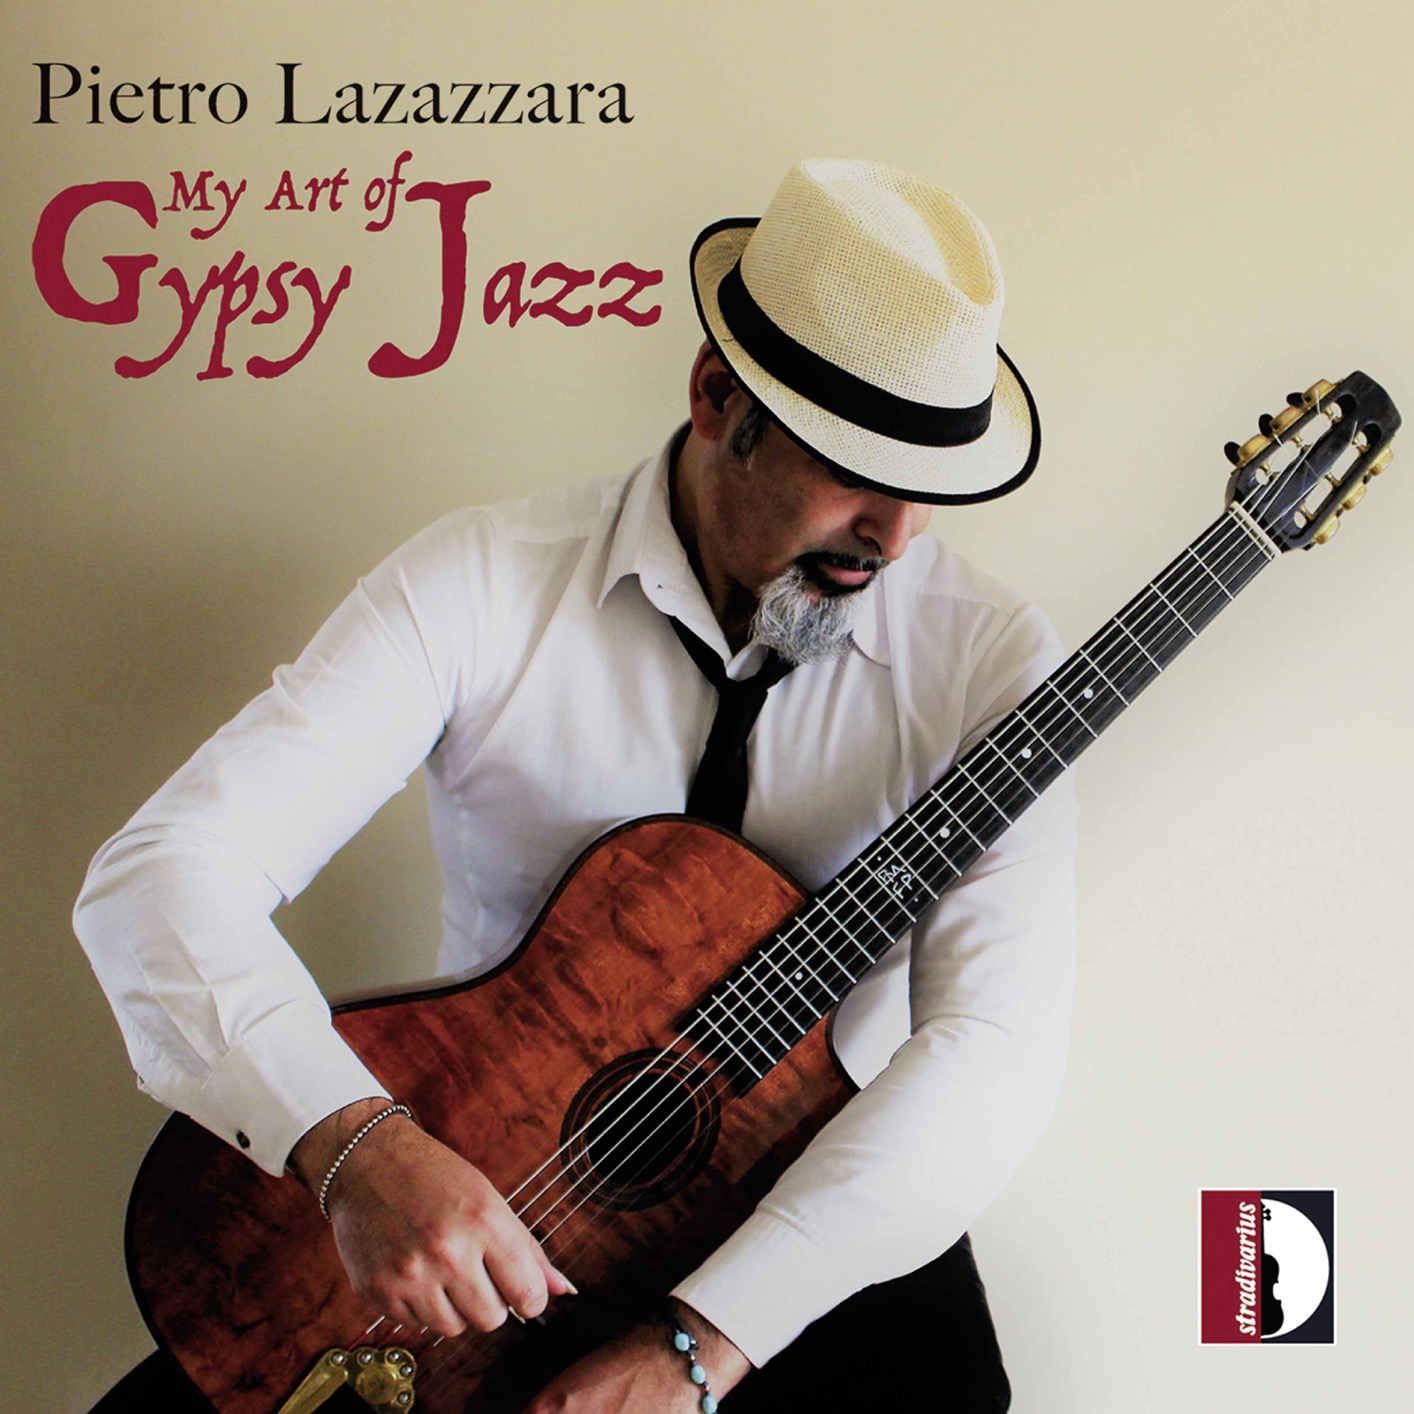 Pietro Lazazzara – My Art of Gypsy Jazz (2020) [FLAC 24bit/48kHz]